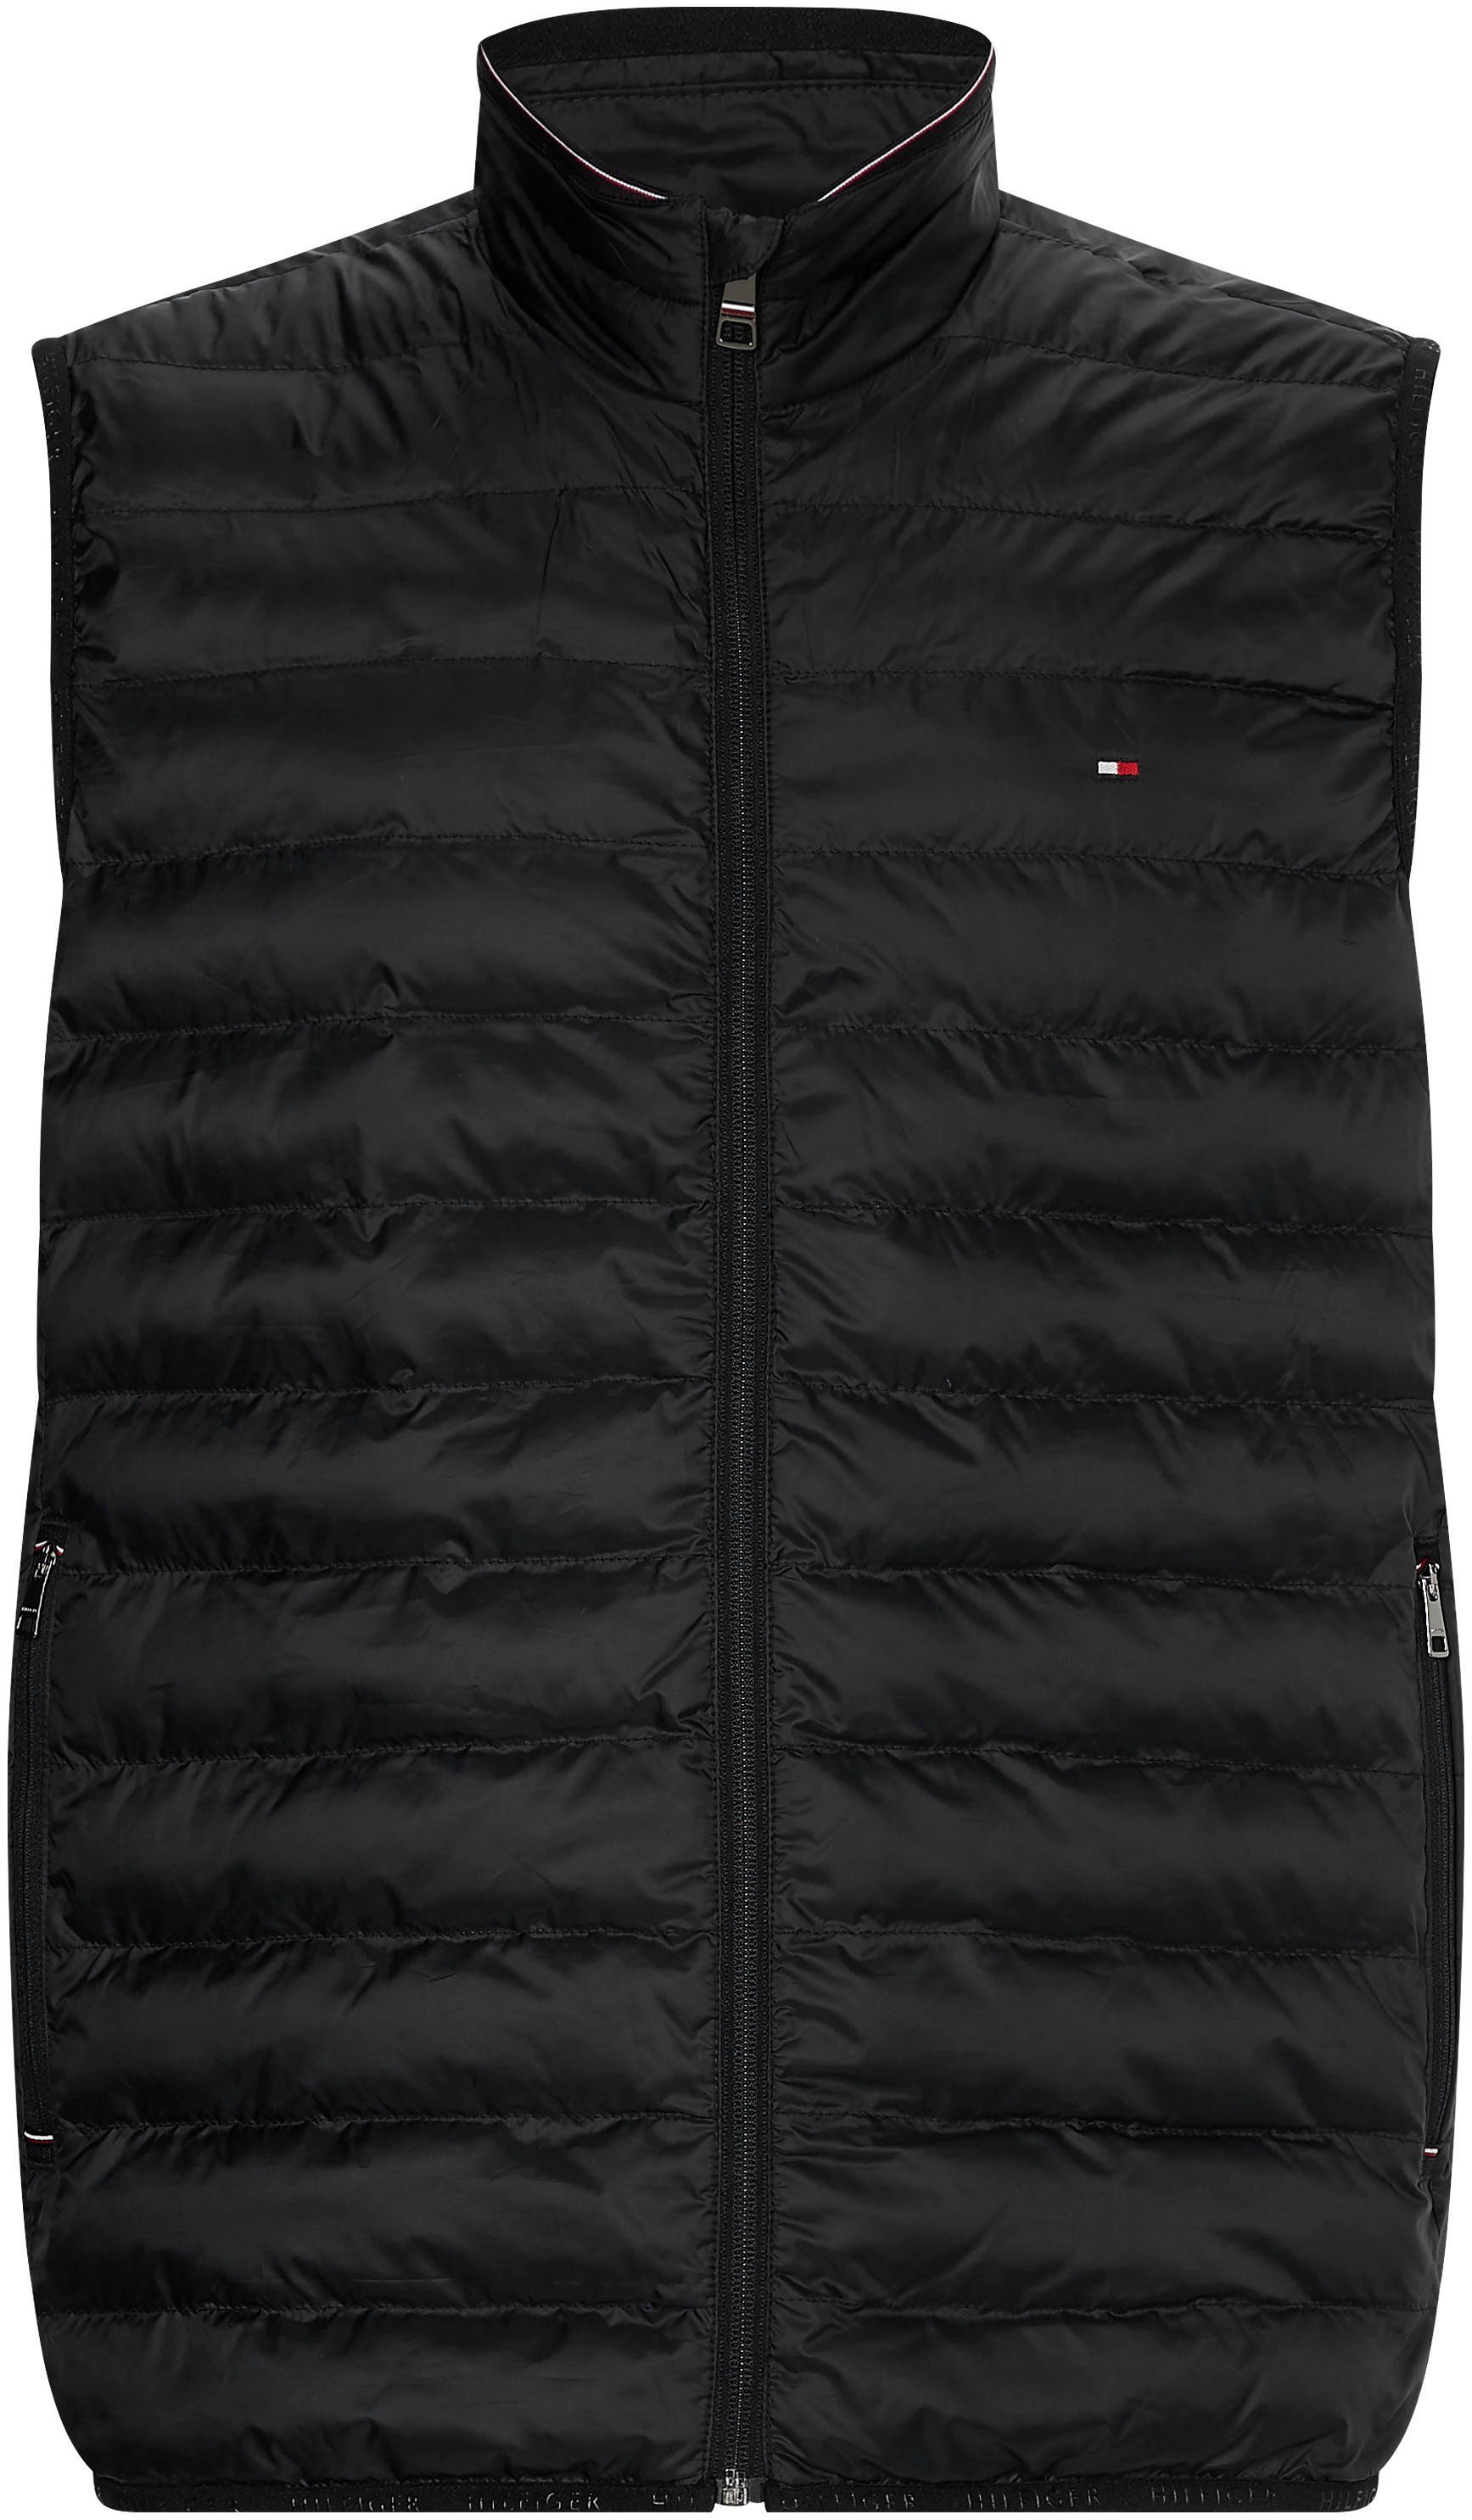 Hilfiger Core jet black Steppweste Packable Down Tommy Vest